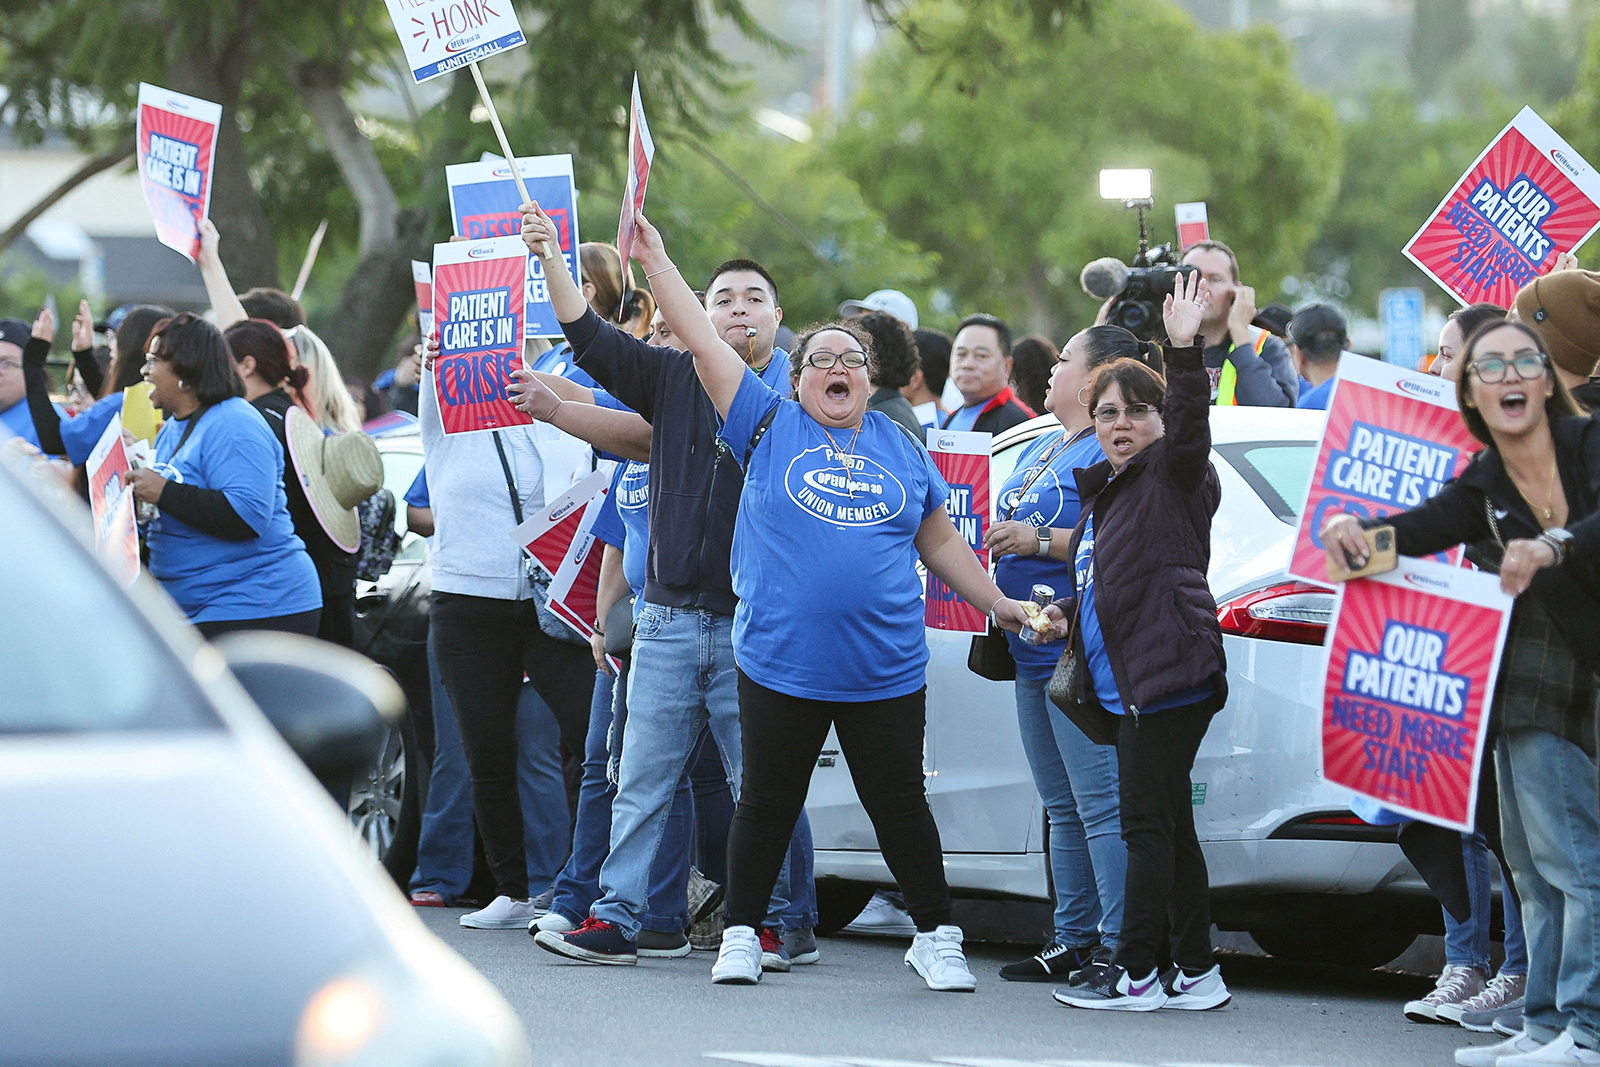 Les gens brandissent des pancartes alors qu'une coalition de syndicats de Kaiser Permanente représentant 75 000 travailleurs de la santé de Kaiser Permanente entame une grève de trois jours à travers les États-Unis au sujet d'un nouveau contrat, à San Diego, en Californie, le 4 octobre.